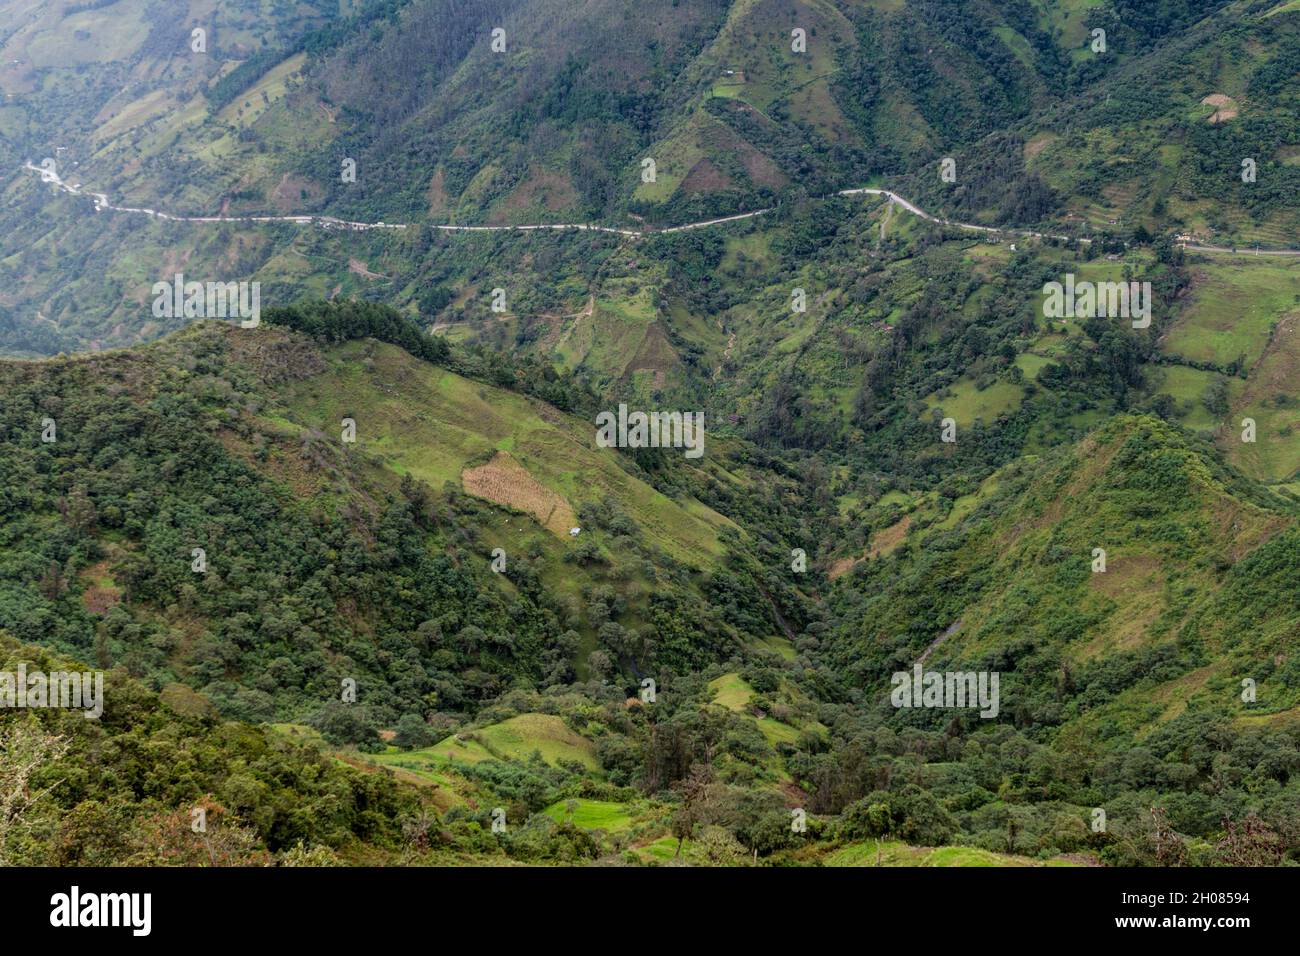 Landscape of southern Ecuador Stock Photo